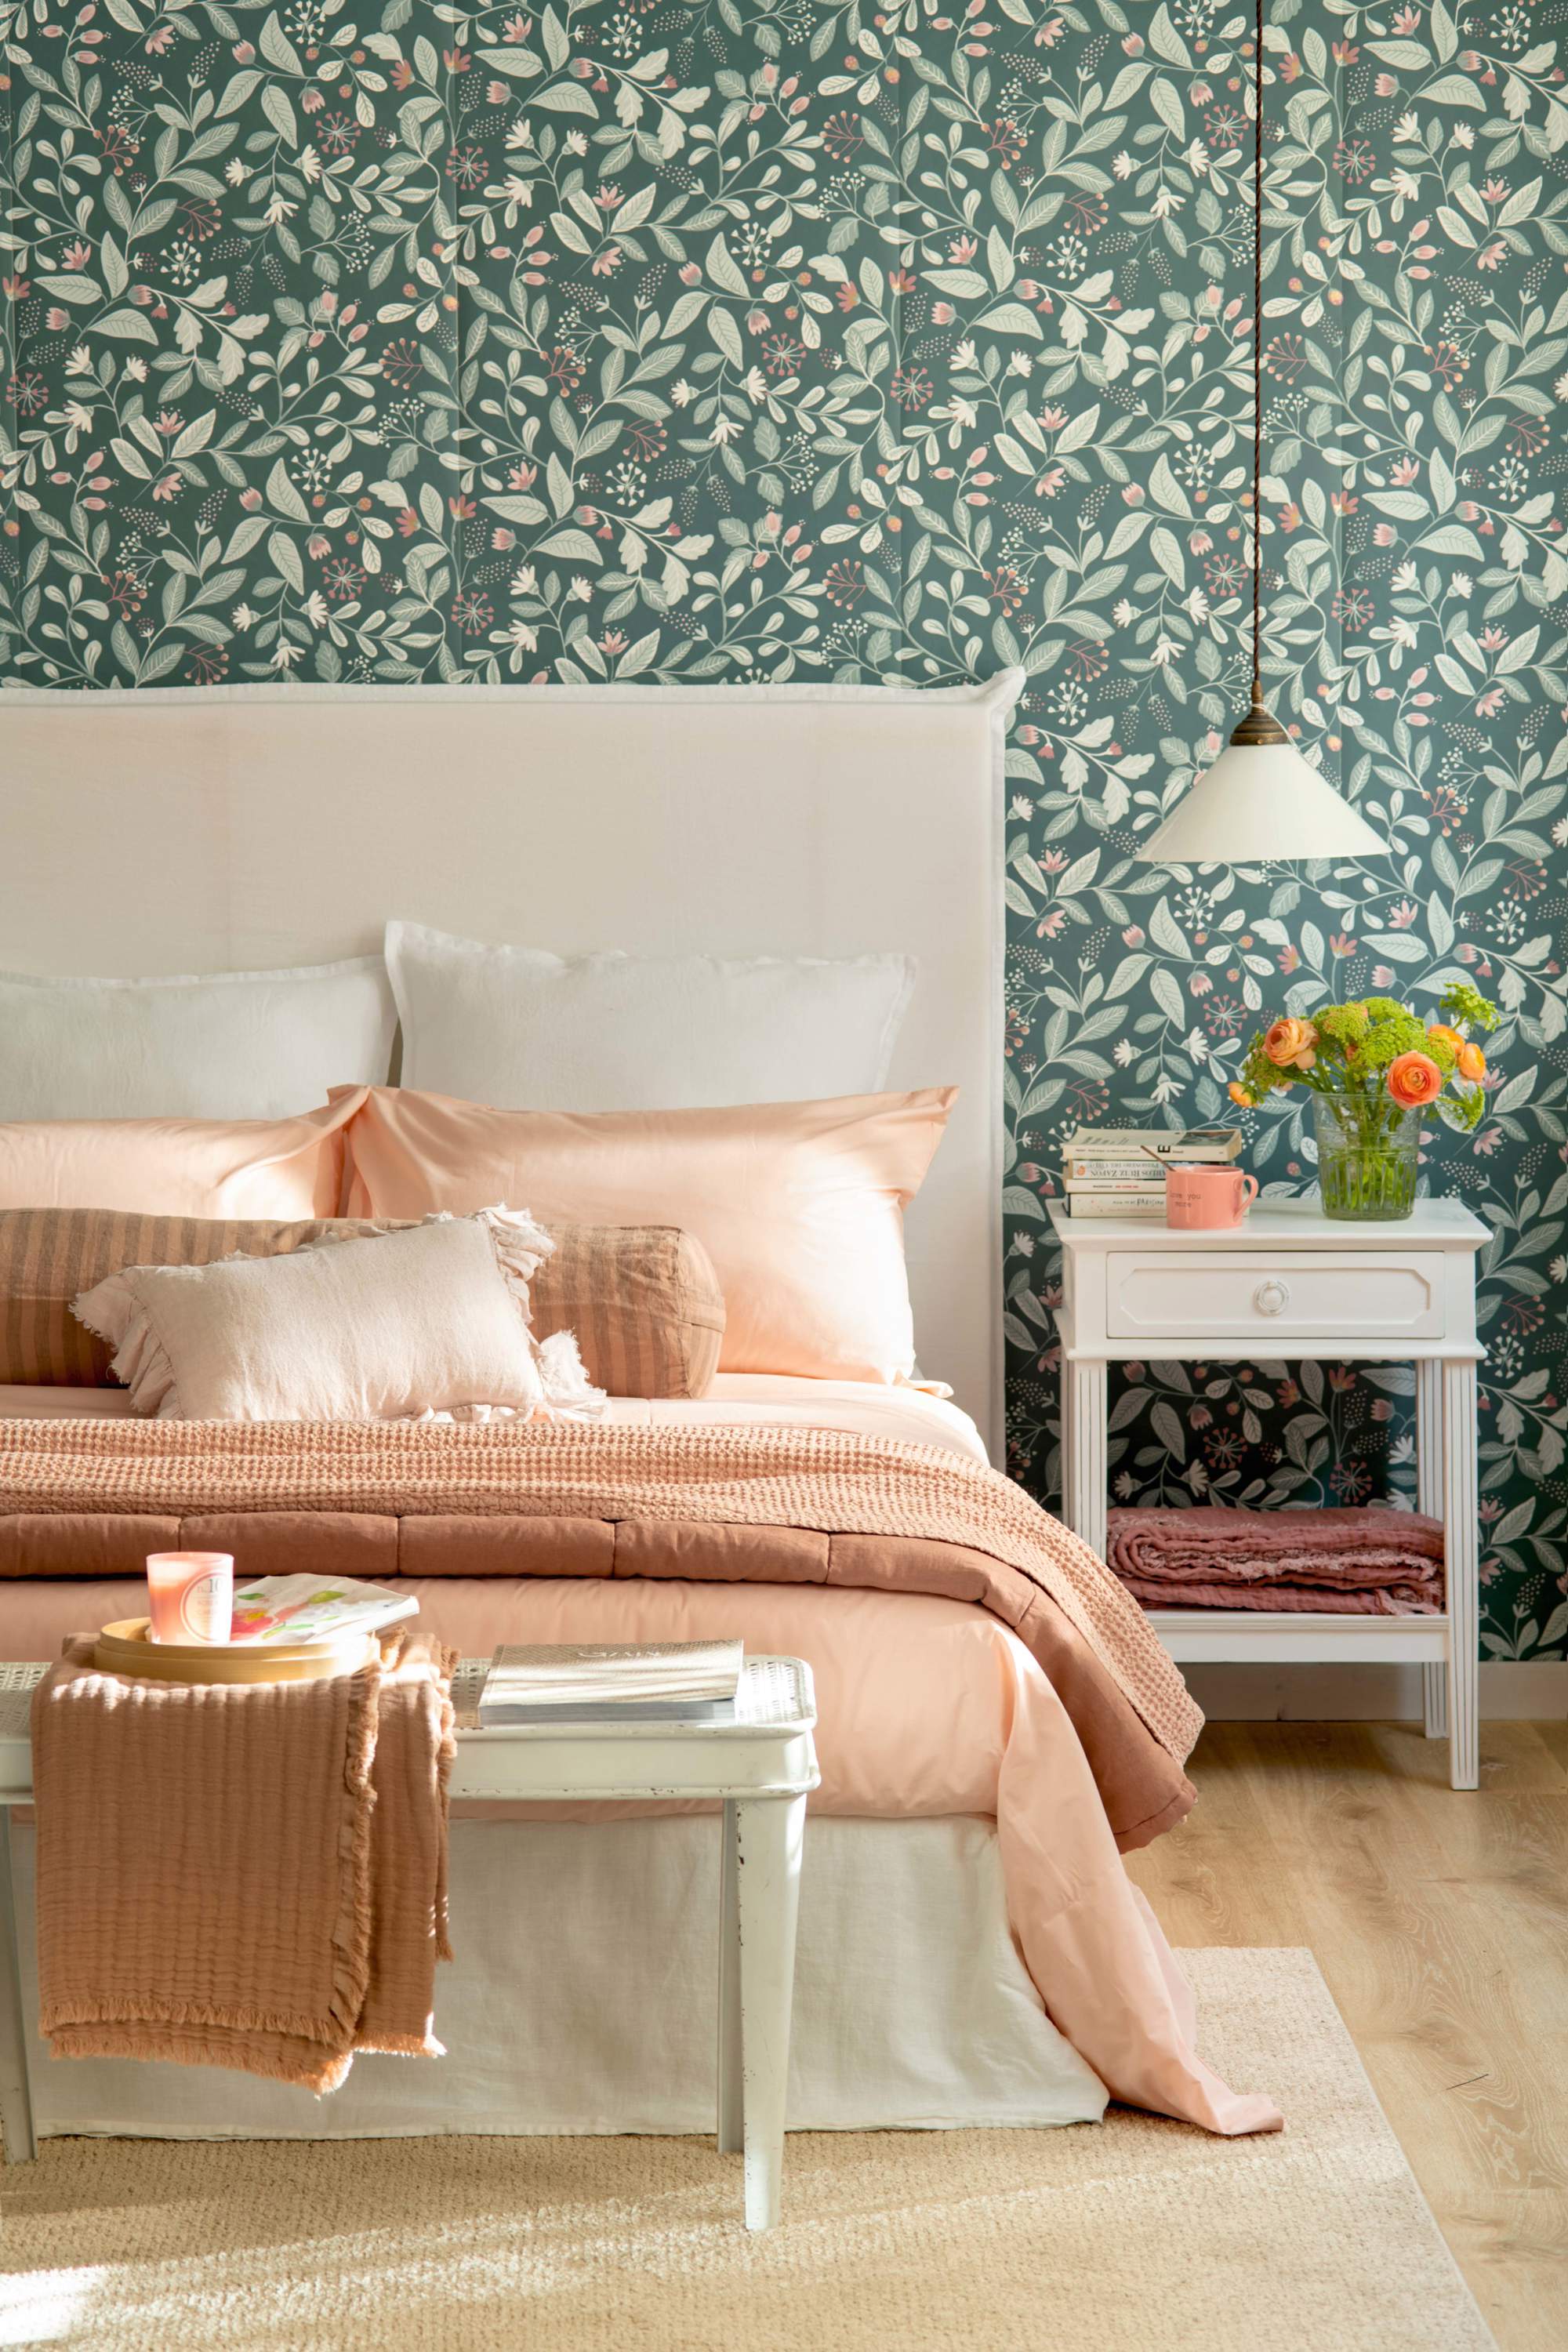 Dormitorio con papel pintado floral.